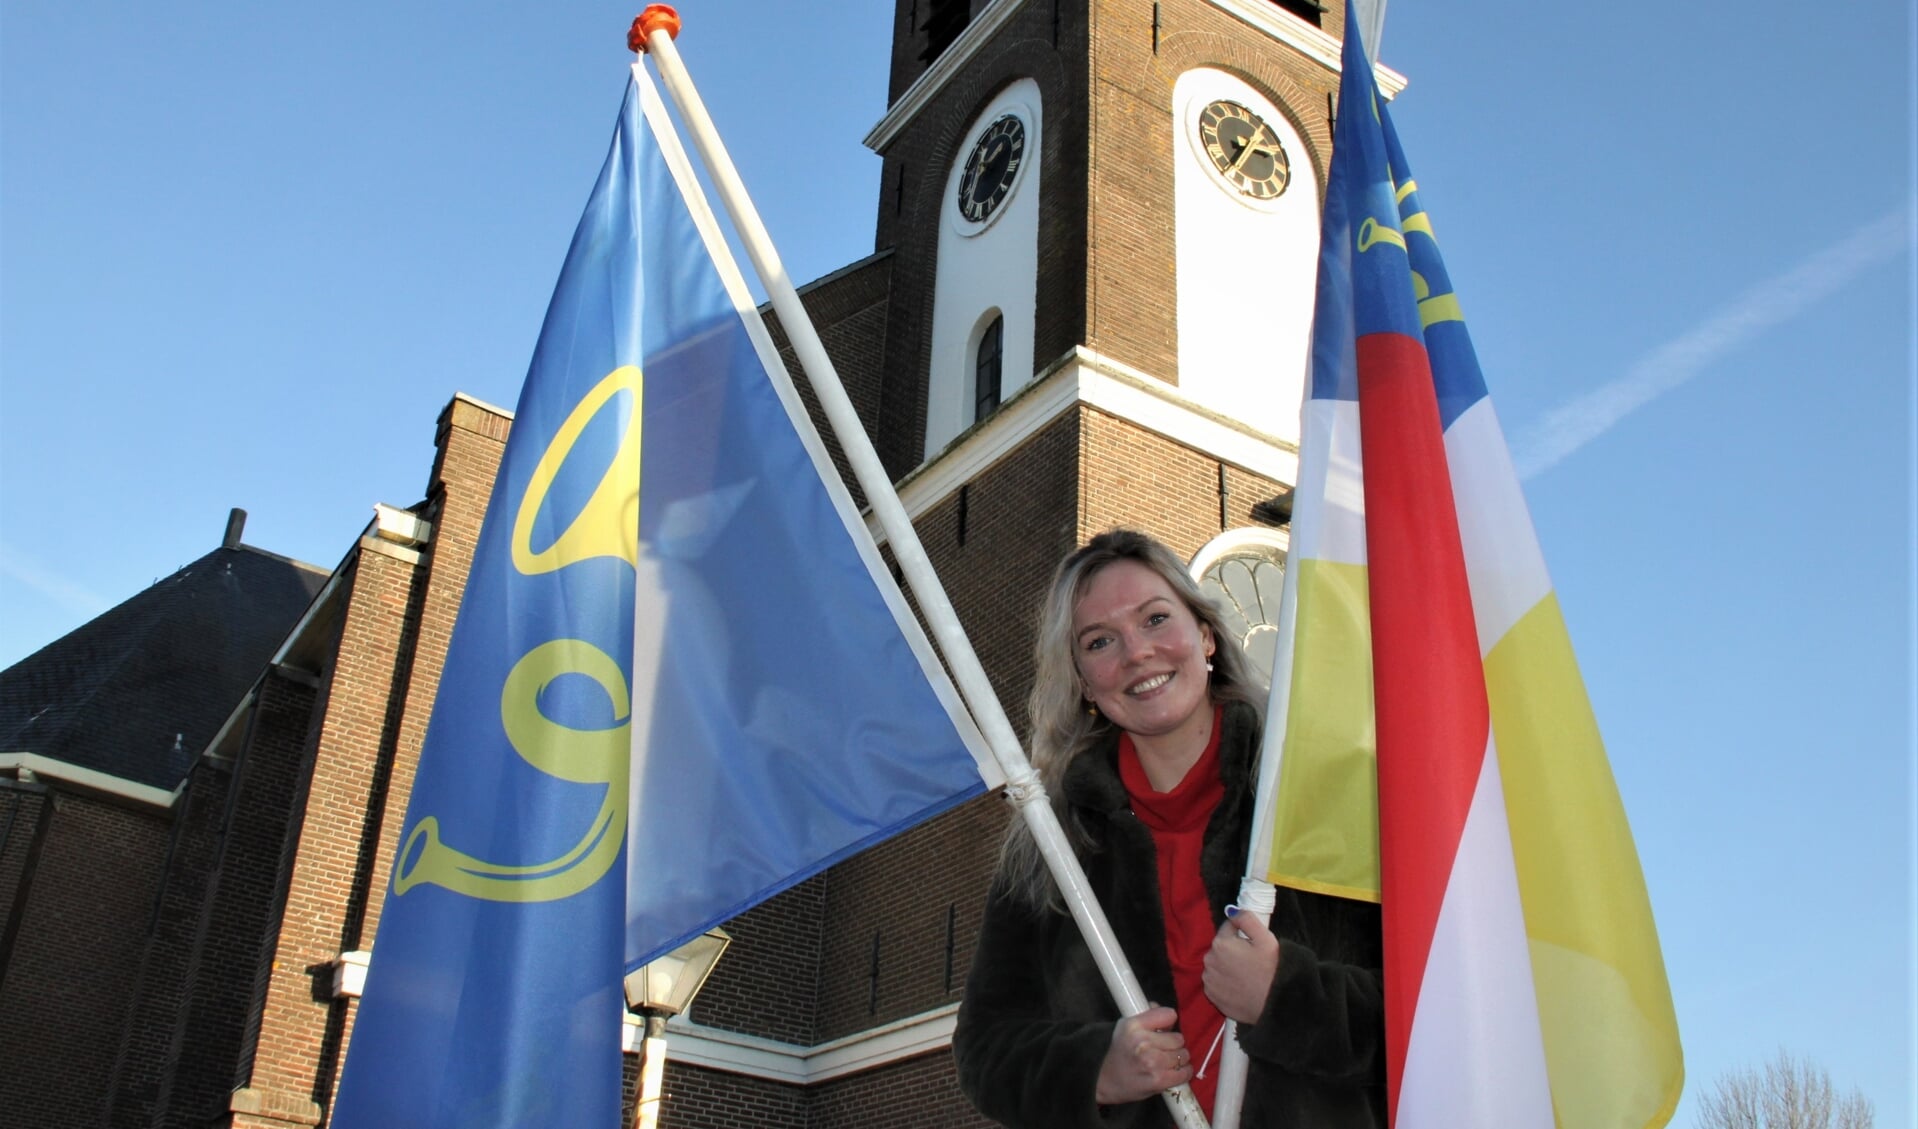 • Mijntjes de Leeuw met de twee dorpsvlaggen van Zegveld. De blauwe vlag heeft ze zelf ontworpen.